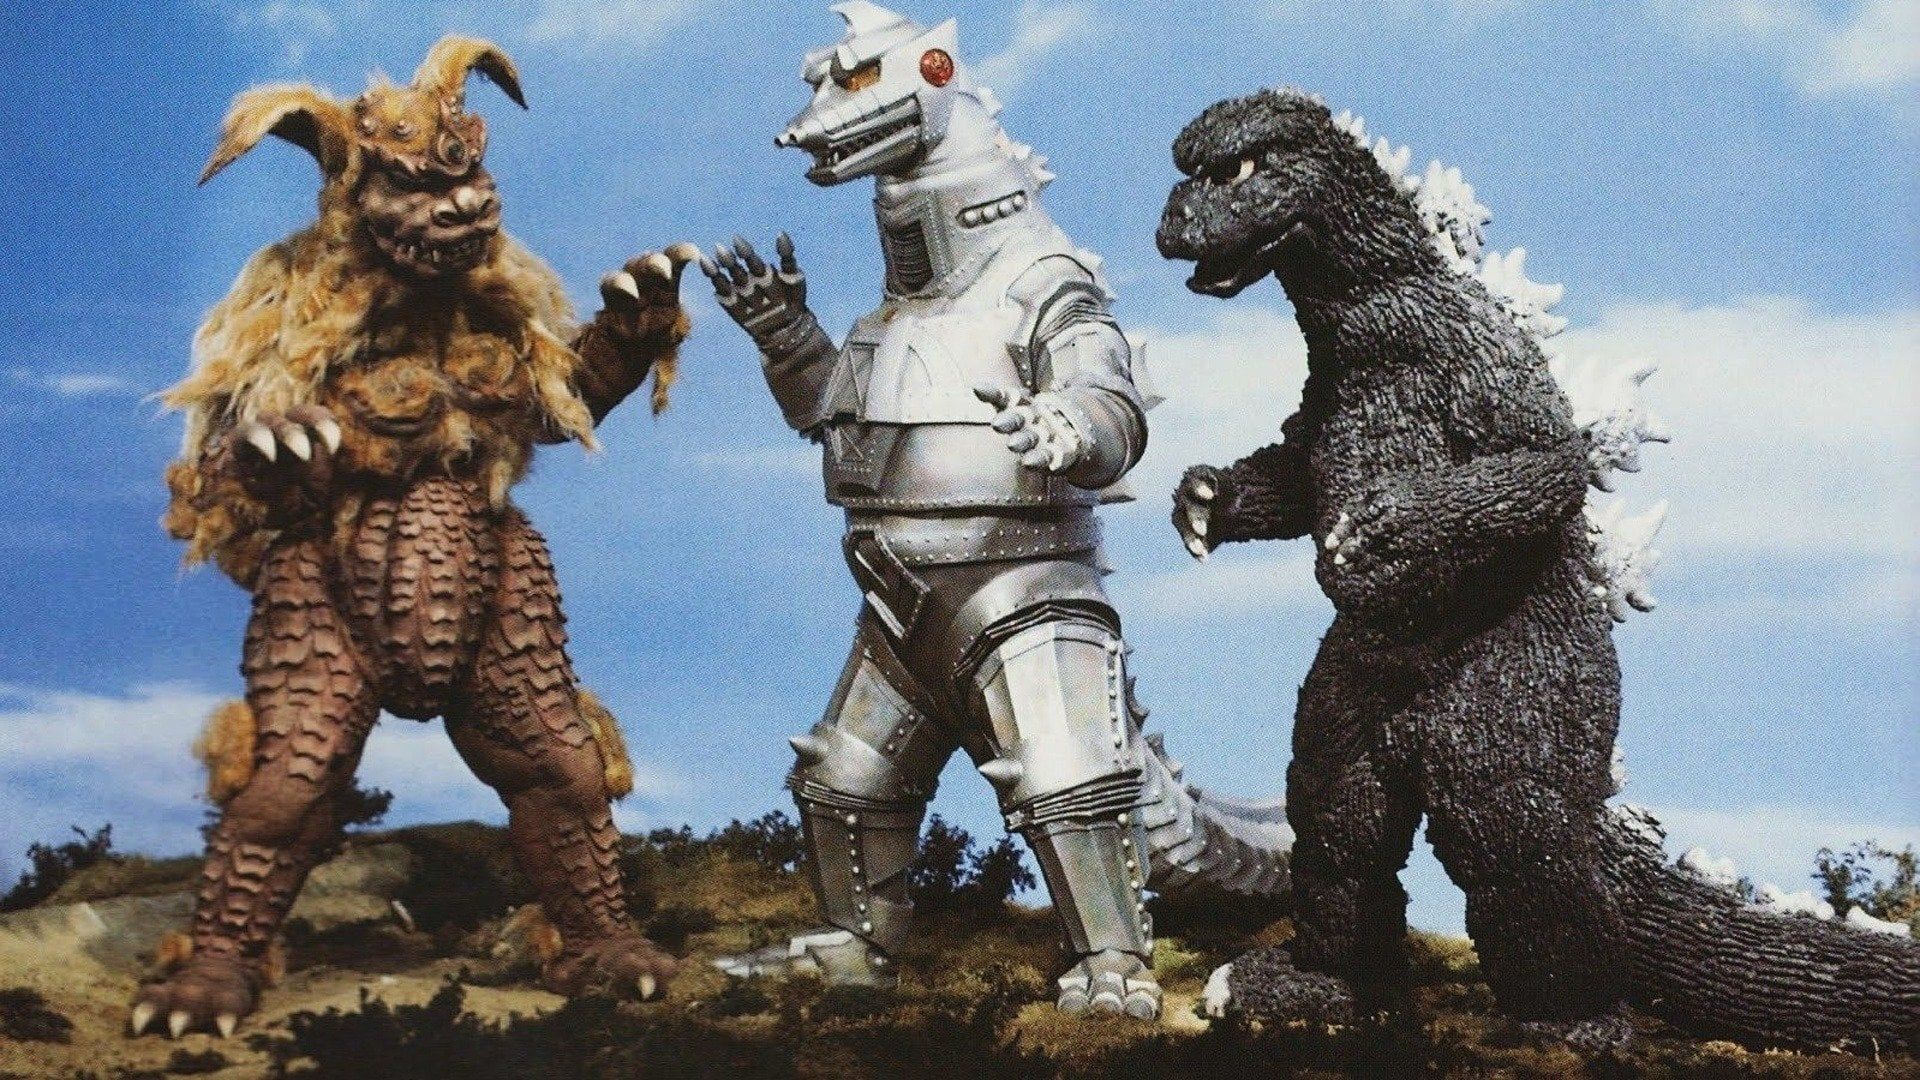 Godzilla vs. Mechagodzilla background